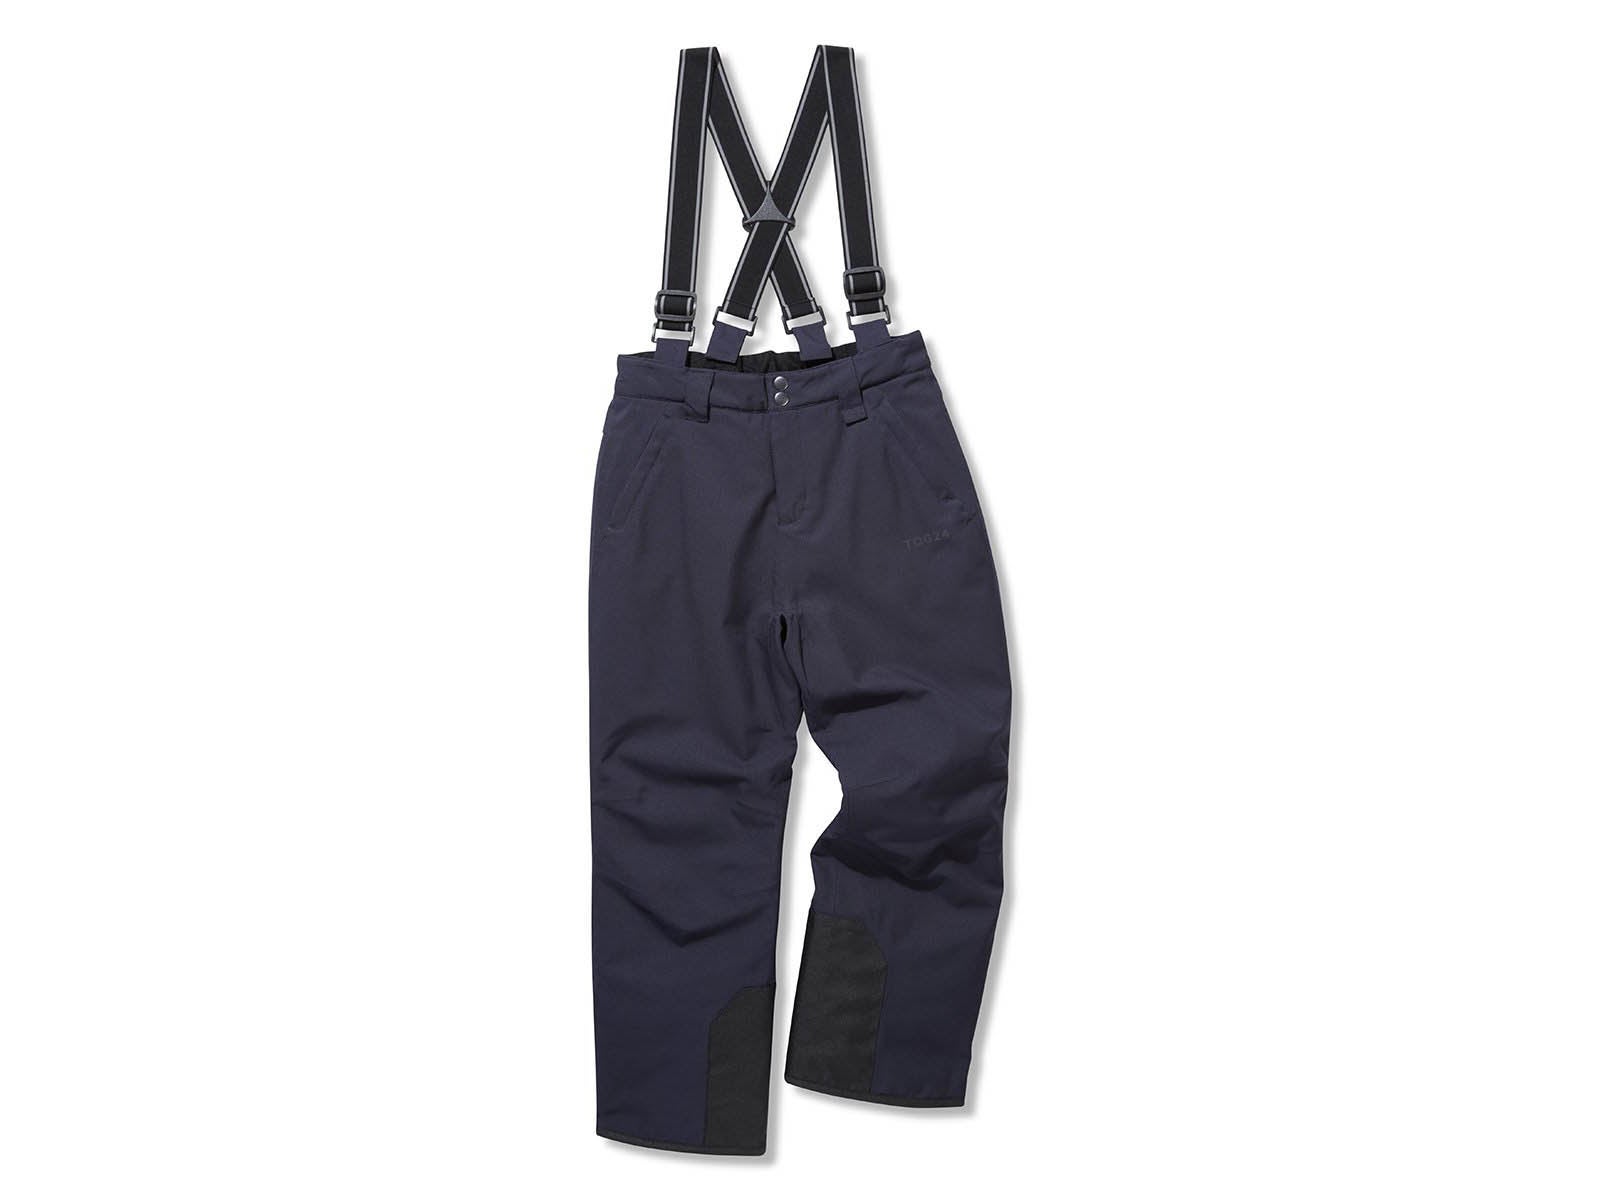 NEW Kids waterproof Sport ski Pants 4T - Boys bottoms